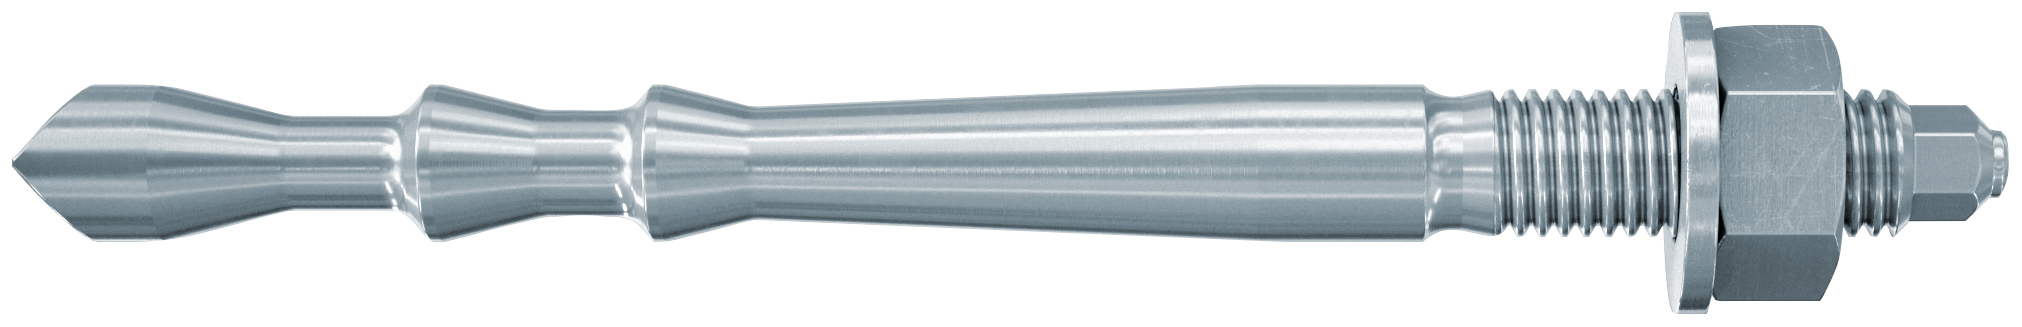 fischer Barra multicono in acciaio FHB II-A L M12 X 100-25 per ancorante chimico FIS HB (1 Pz.) Barra multicono lunga in acciaio zincato classe 8.8. Massime prestazioni a trazione in calcestruzzo fessurato e a ridotte distanze dai bordi. fie1816